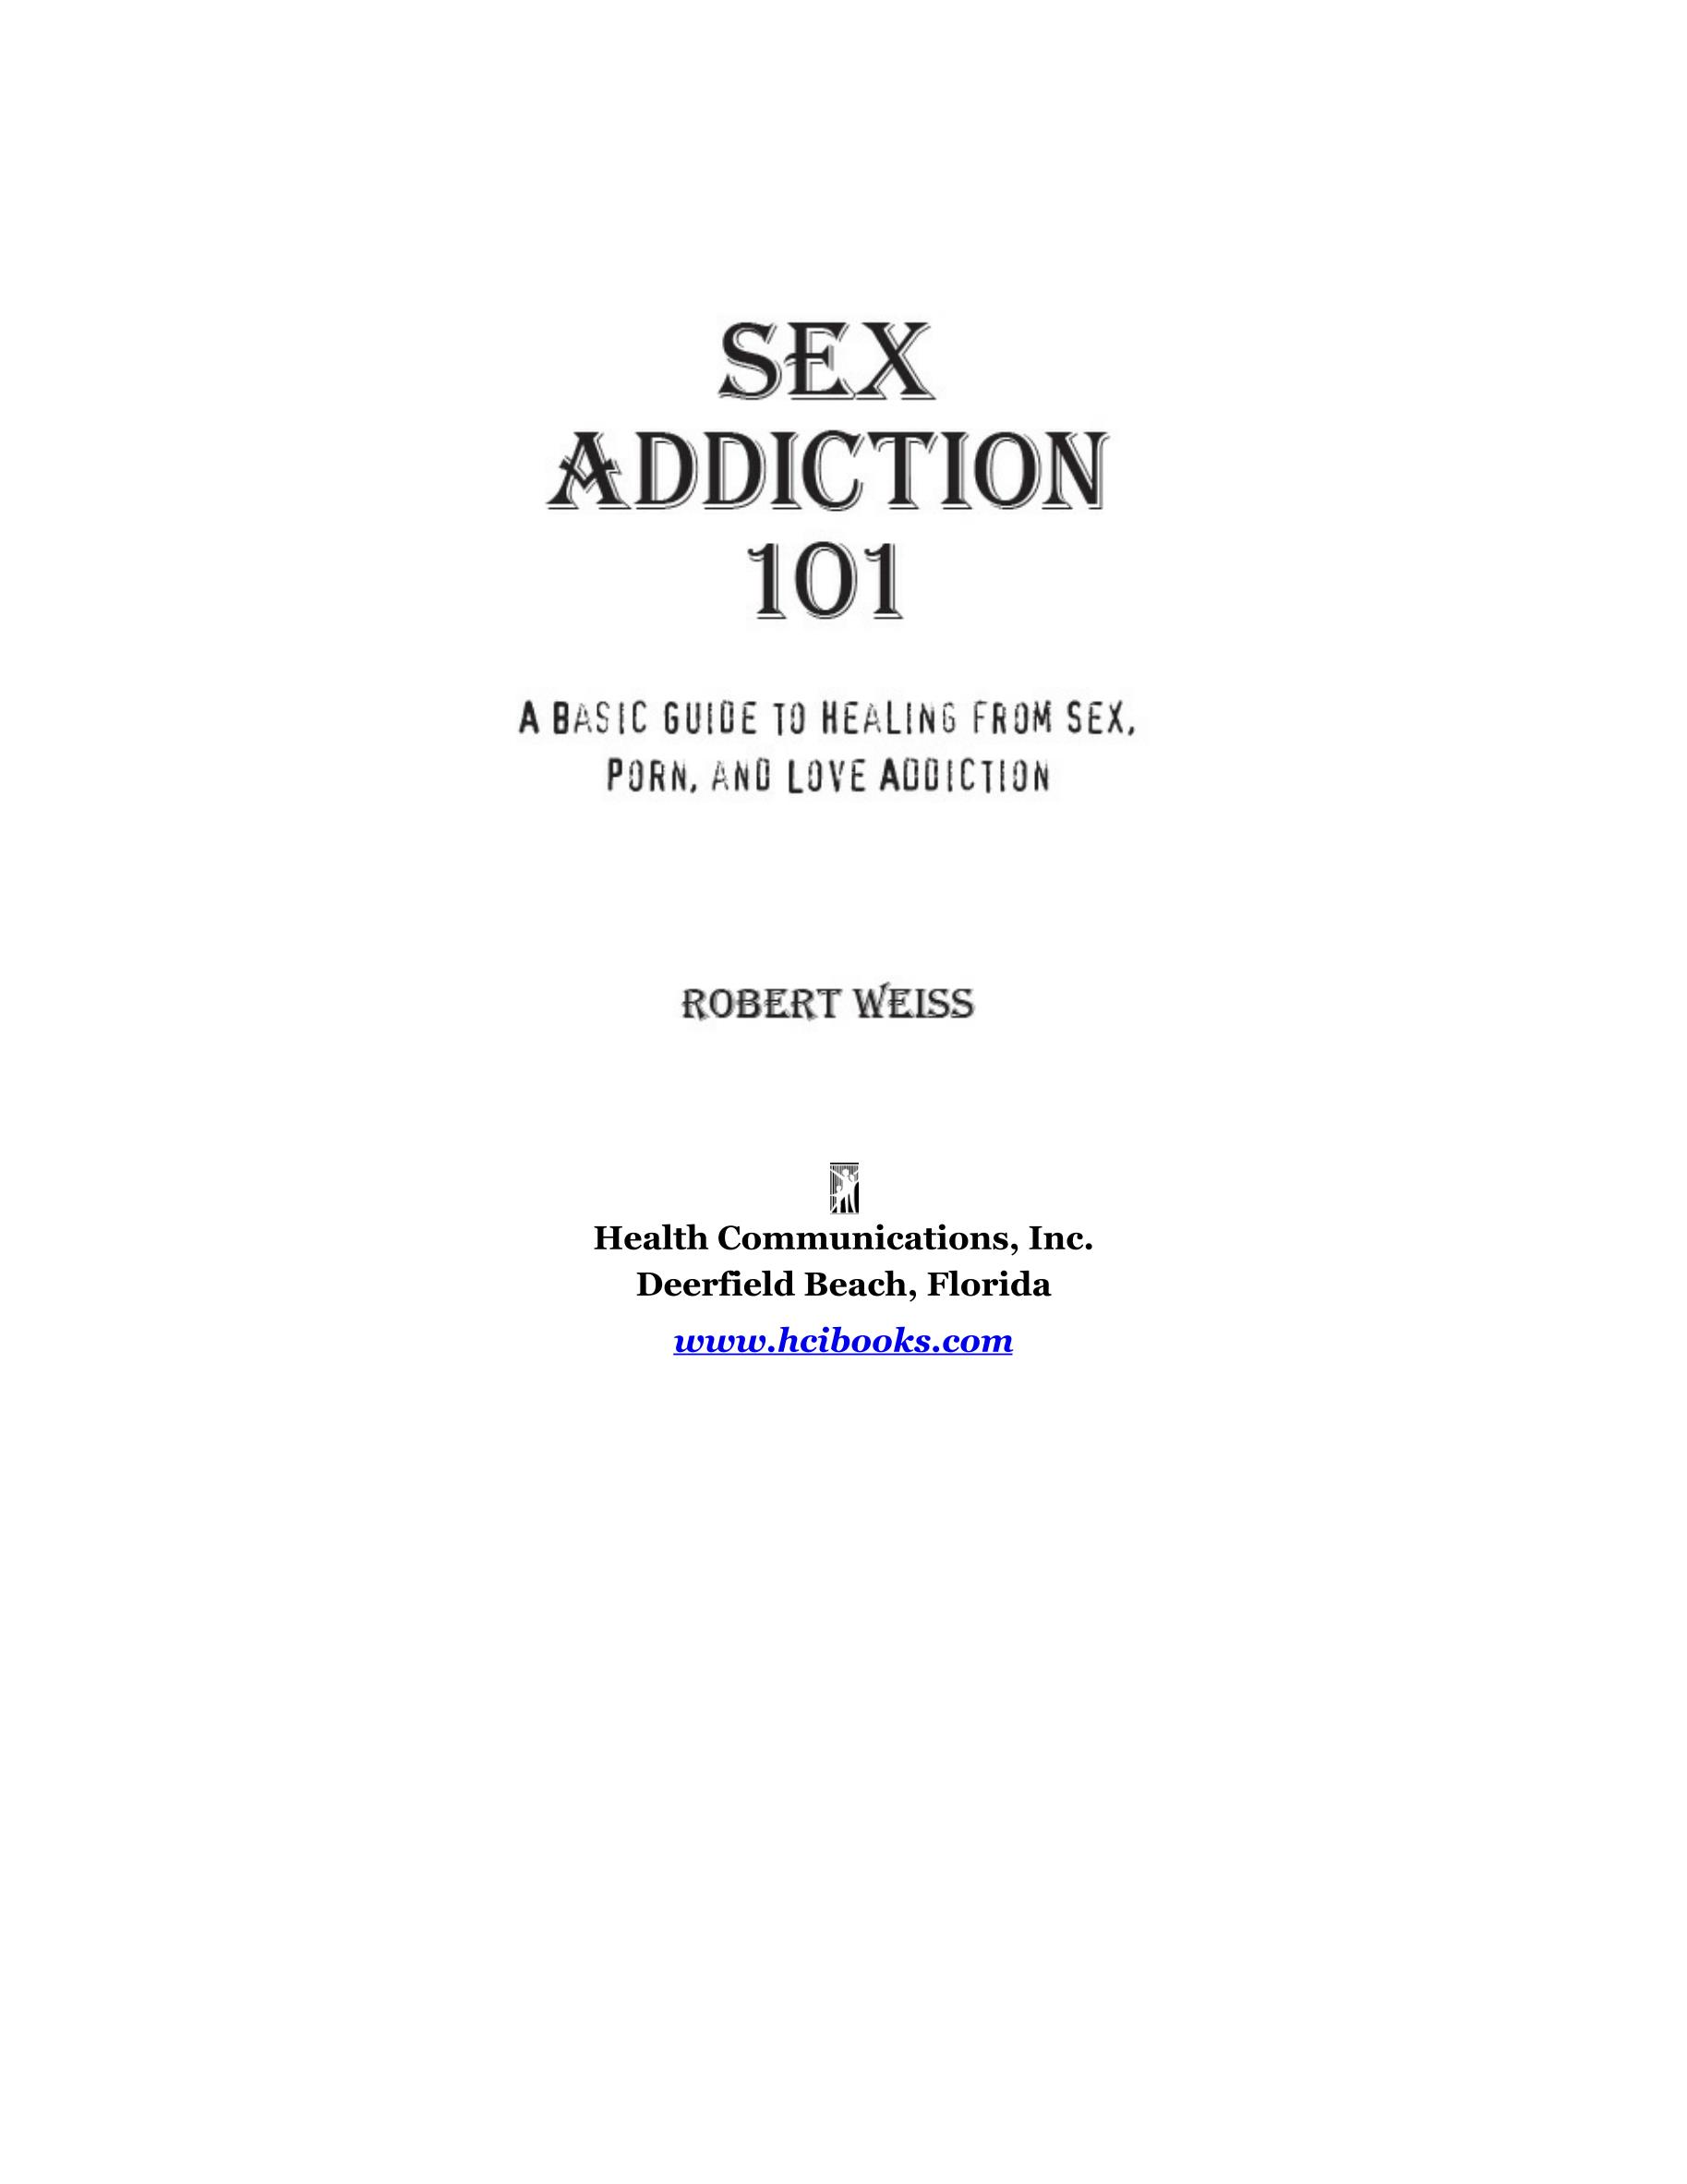 电子书-理解和治疗性和色情制品成瘾。挣扎在性瘾中的人和那些想帮助他们的人的综合指南（英）_文库-报告厅